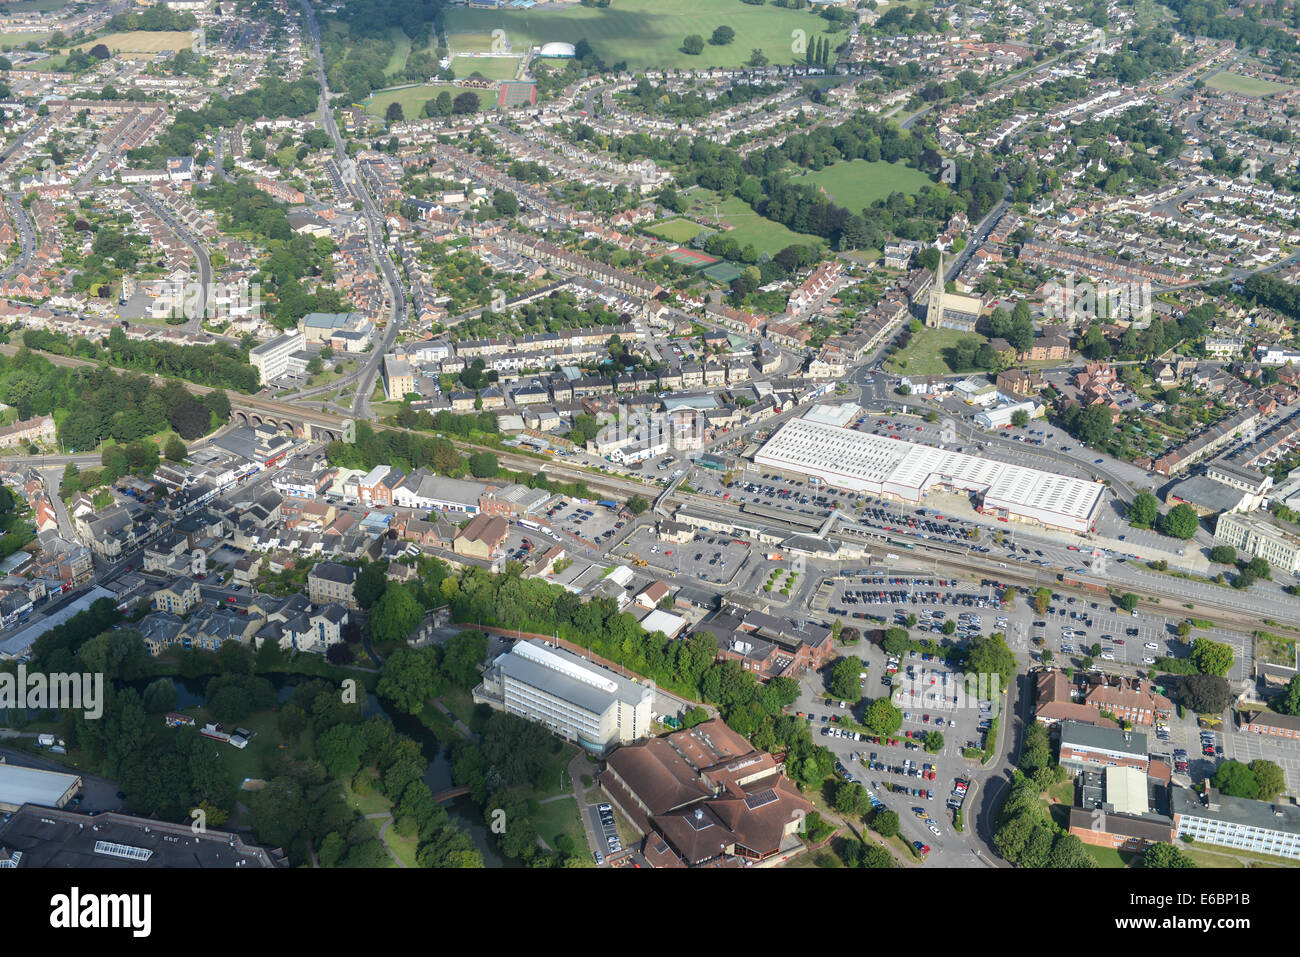 Una vista aérea de Chippenham, en Wiltshire, Inglaterra, mostrando el área alrededor de la estación de tren y el centro de la ciudad. Foto de stock